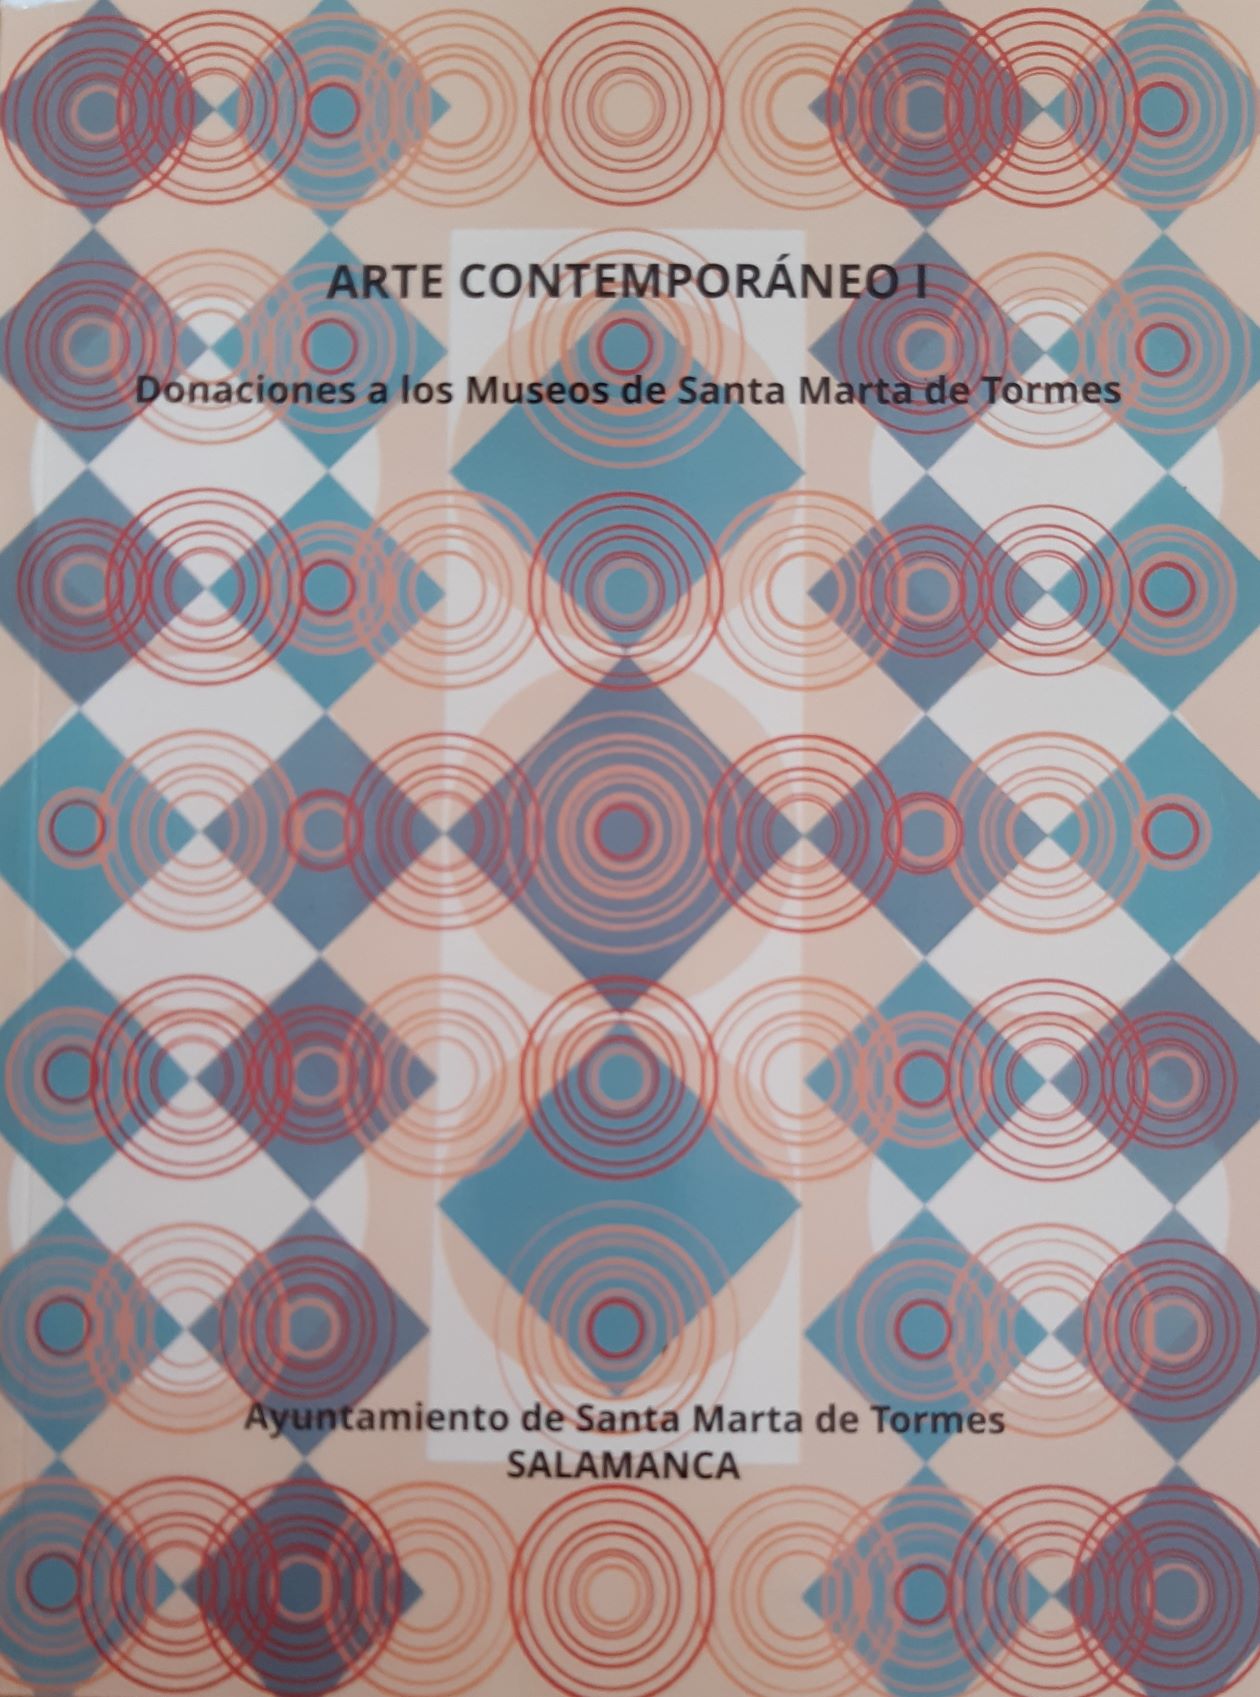 Imagen de portada del libro Arte contemporáneo I